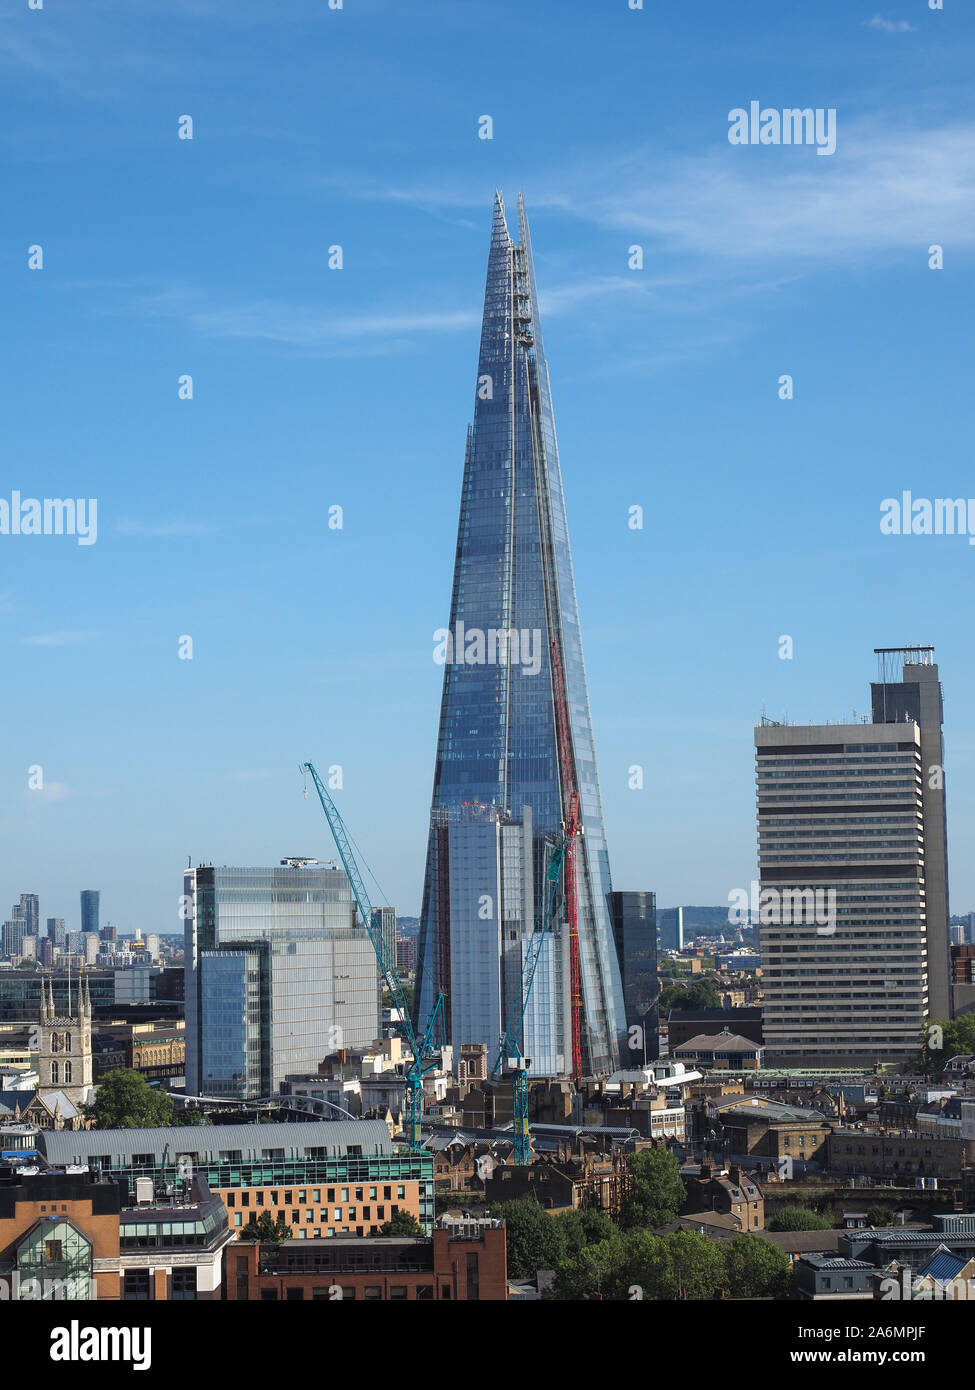 Londres, UK - circa 2019 SEPTEMBRE : Le gratte-ciel Shard conçu par l'architecte italien Renzo Piano, c'est le plus haut bâtiment de la ville Banque D'Images